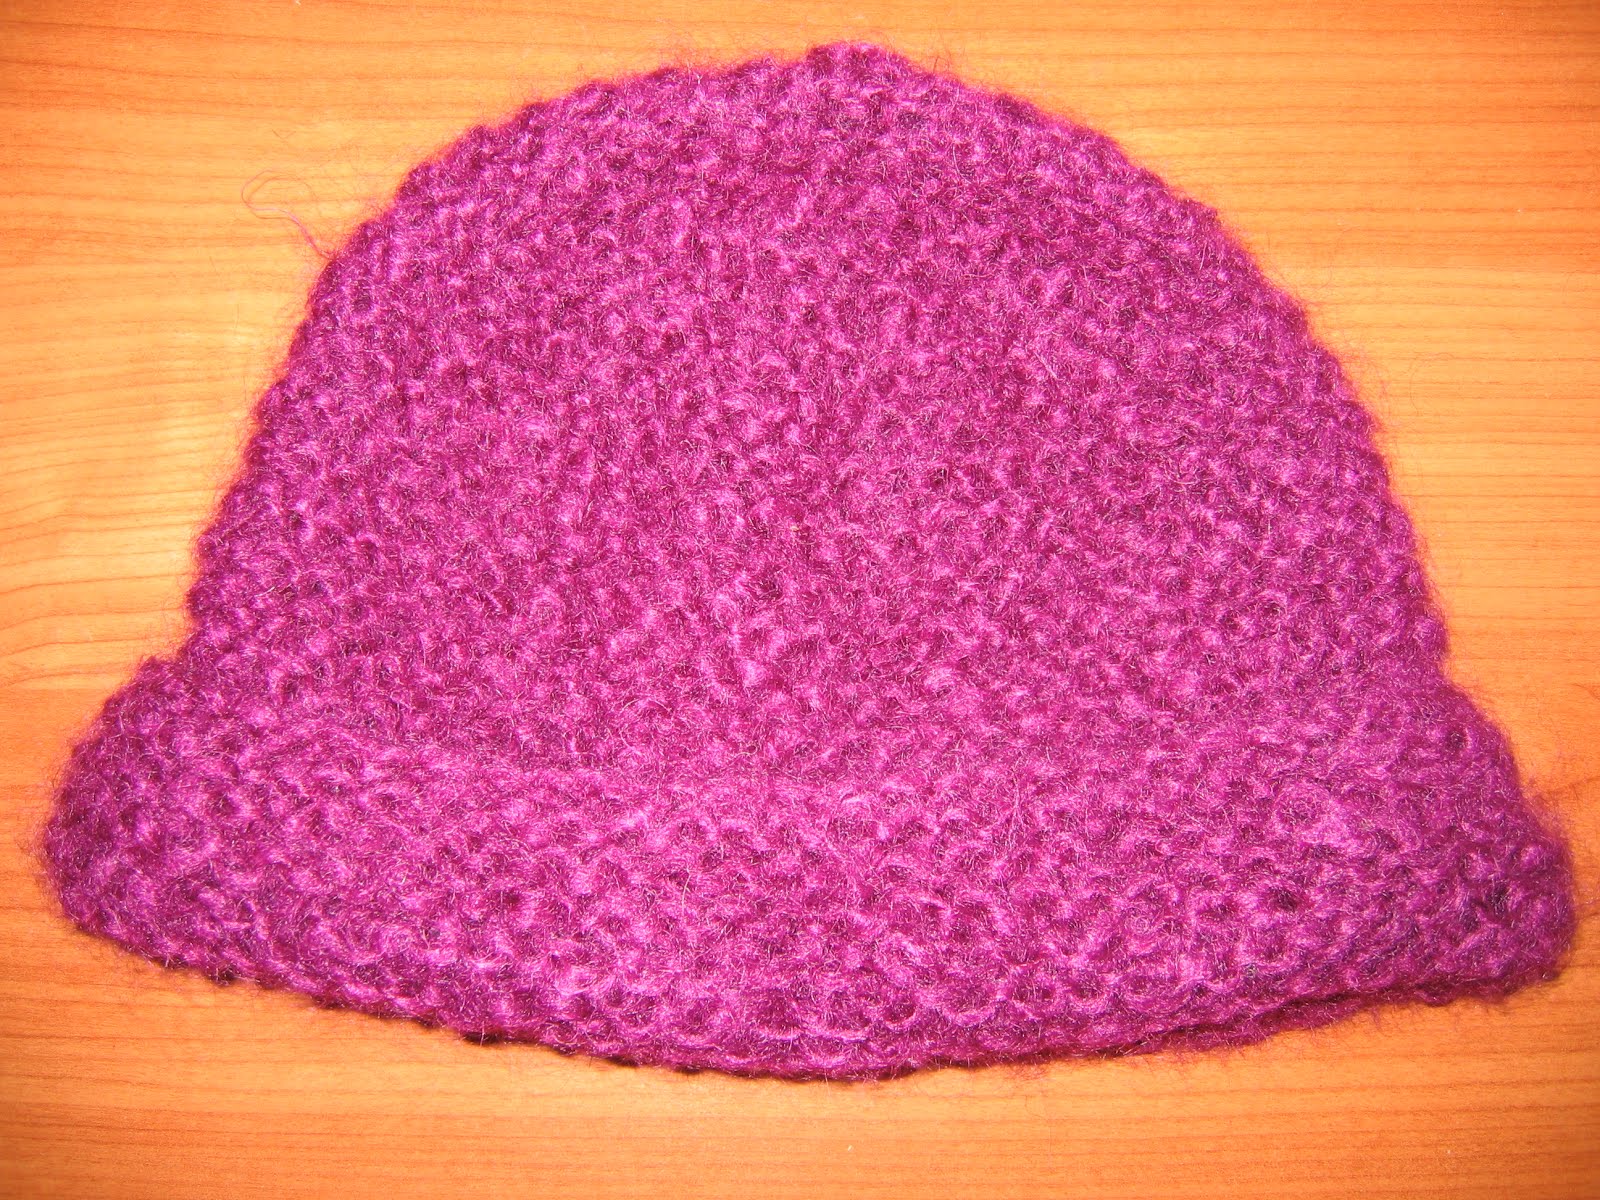 tricoter un bonnet facile pour femme